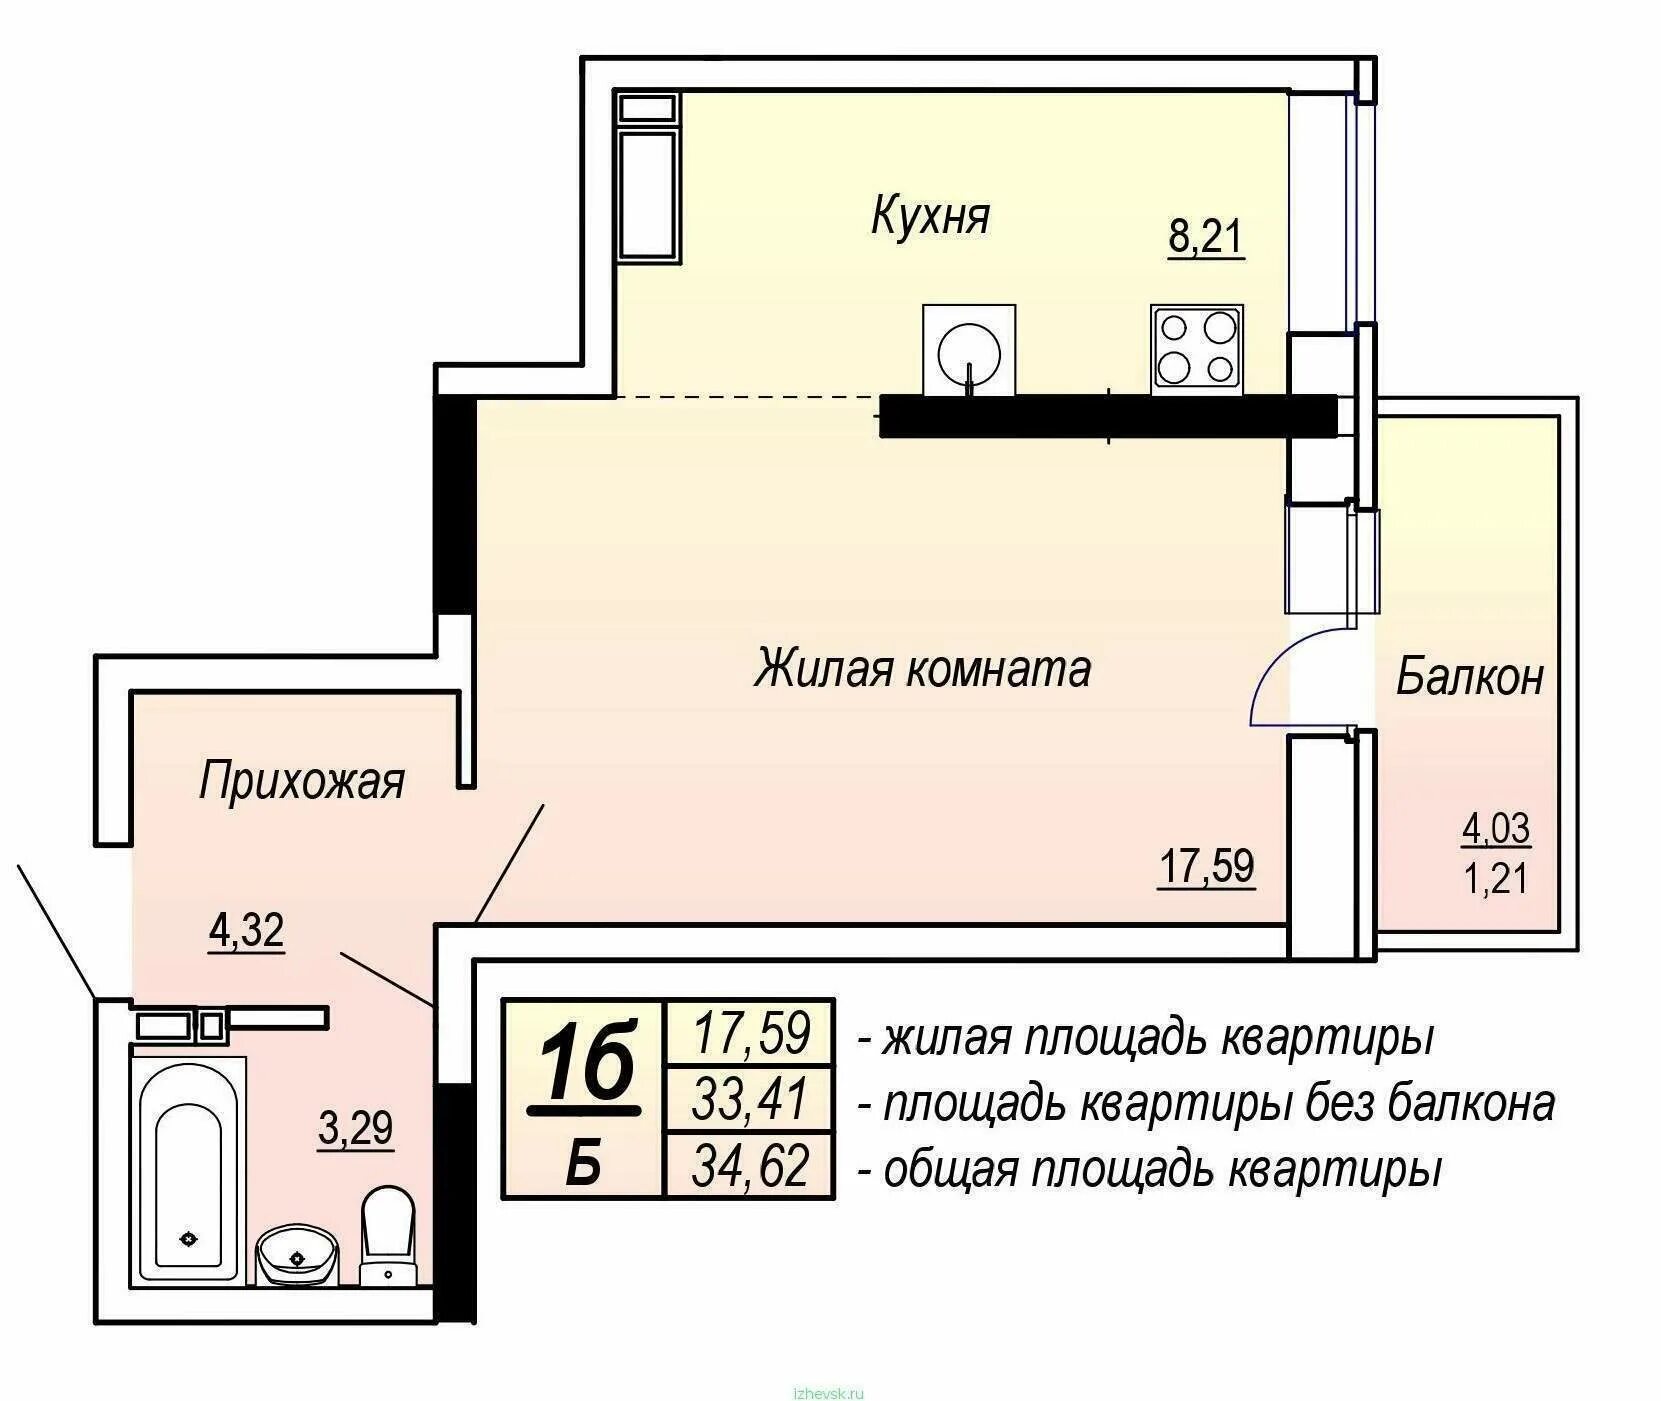 Общая площадь квартиры. Жилая площадь квартиры и общая площадь. Жилая площадь квартиры это. Общая площадь квартиры на плане.